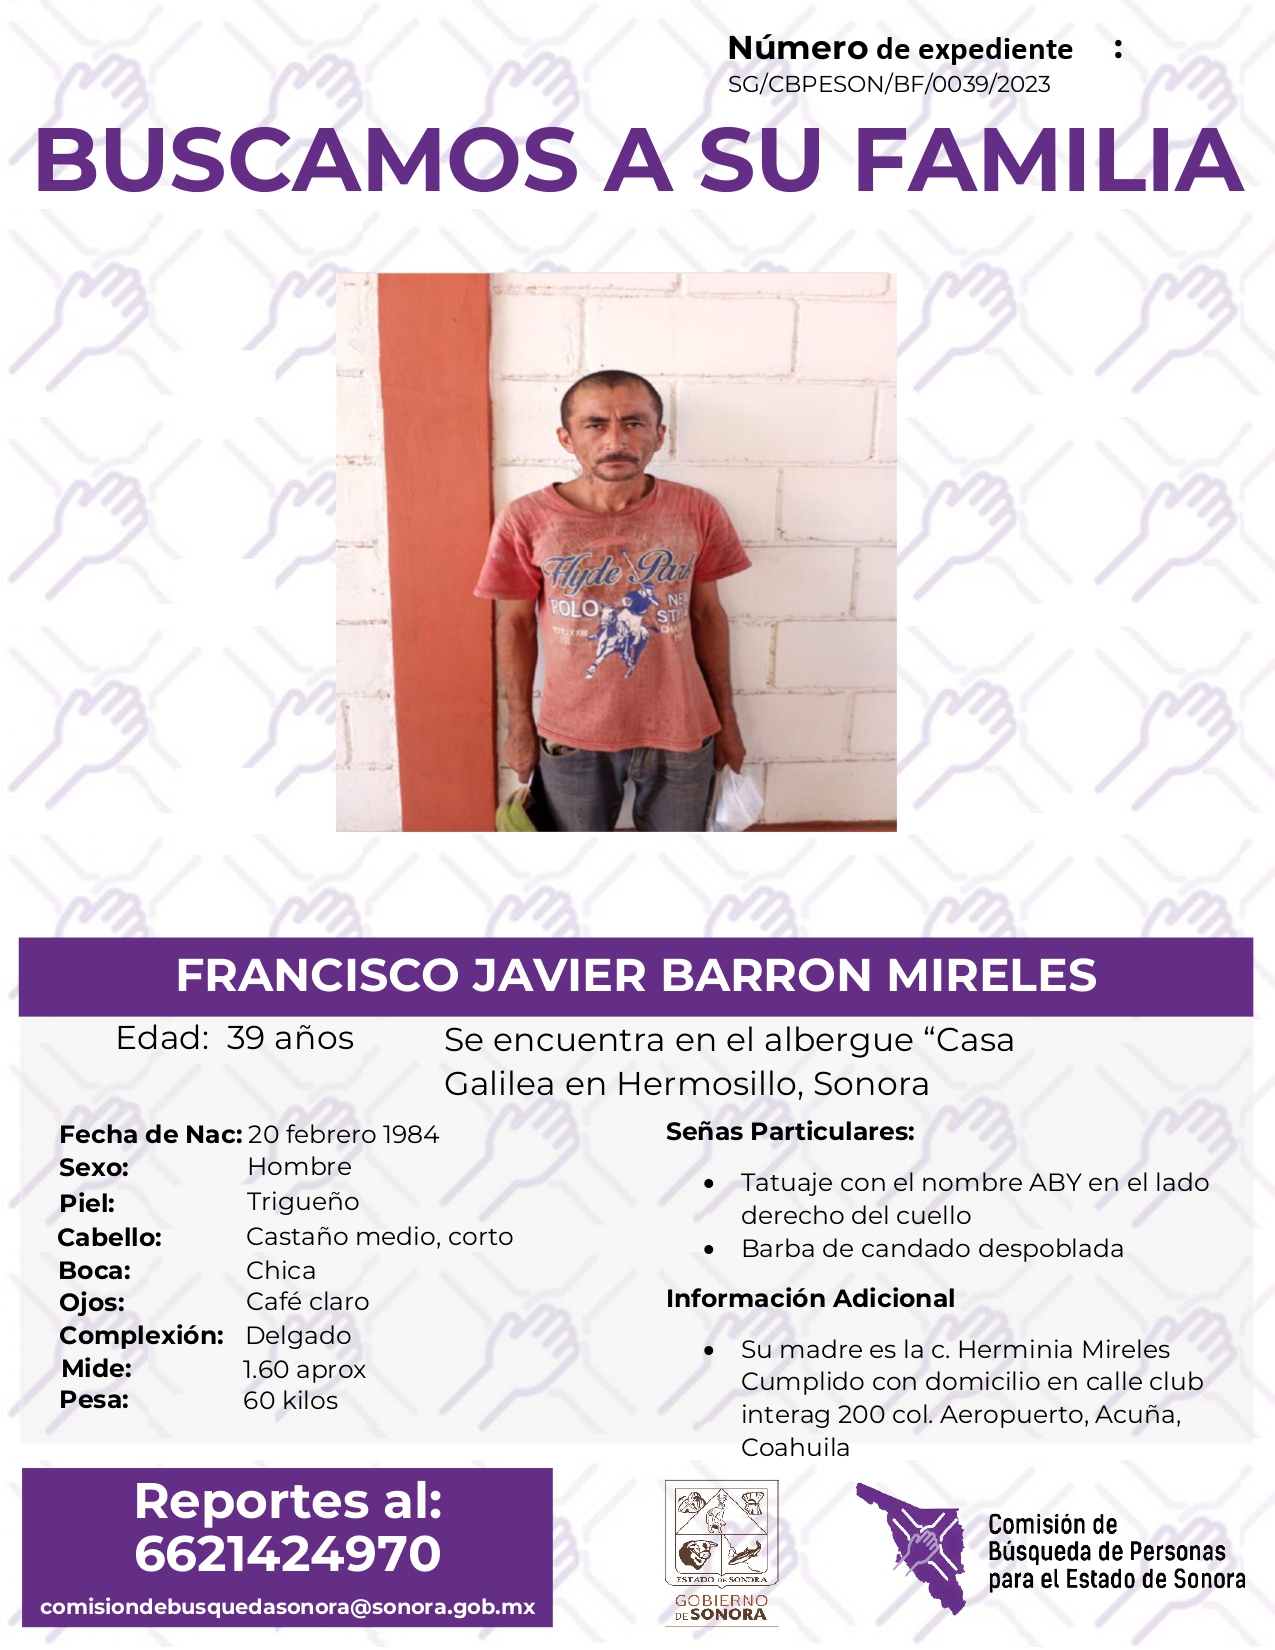 FRANCISCO JAVIER BARRON MIRELES - BUSQUEDA DE FAMILIA